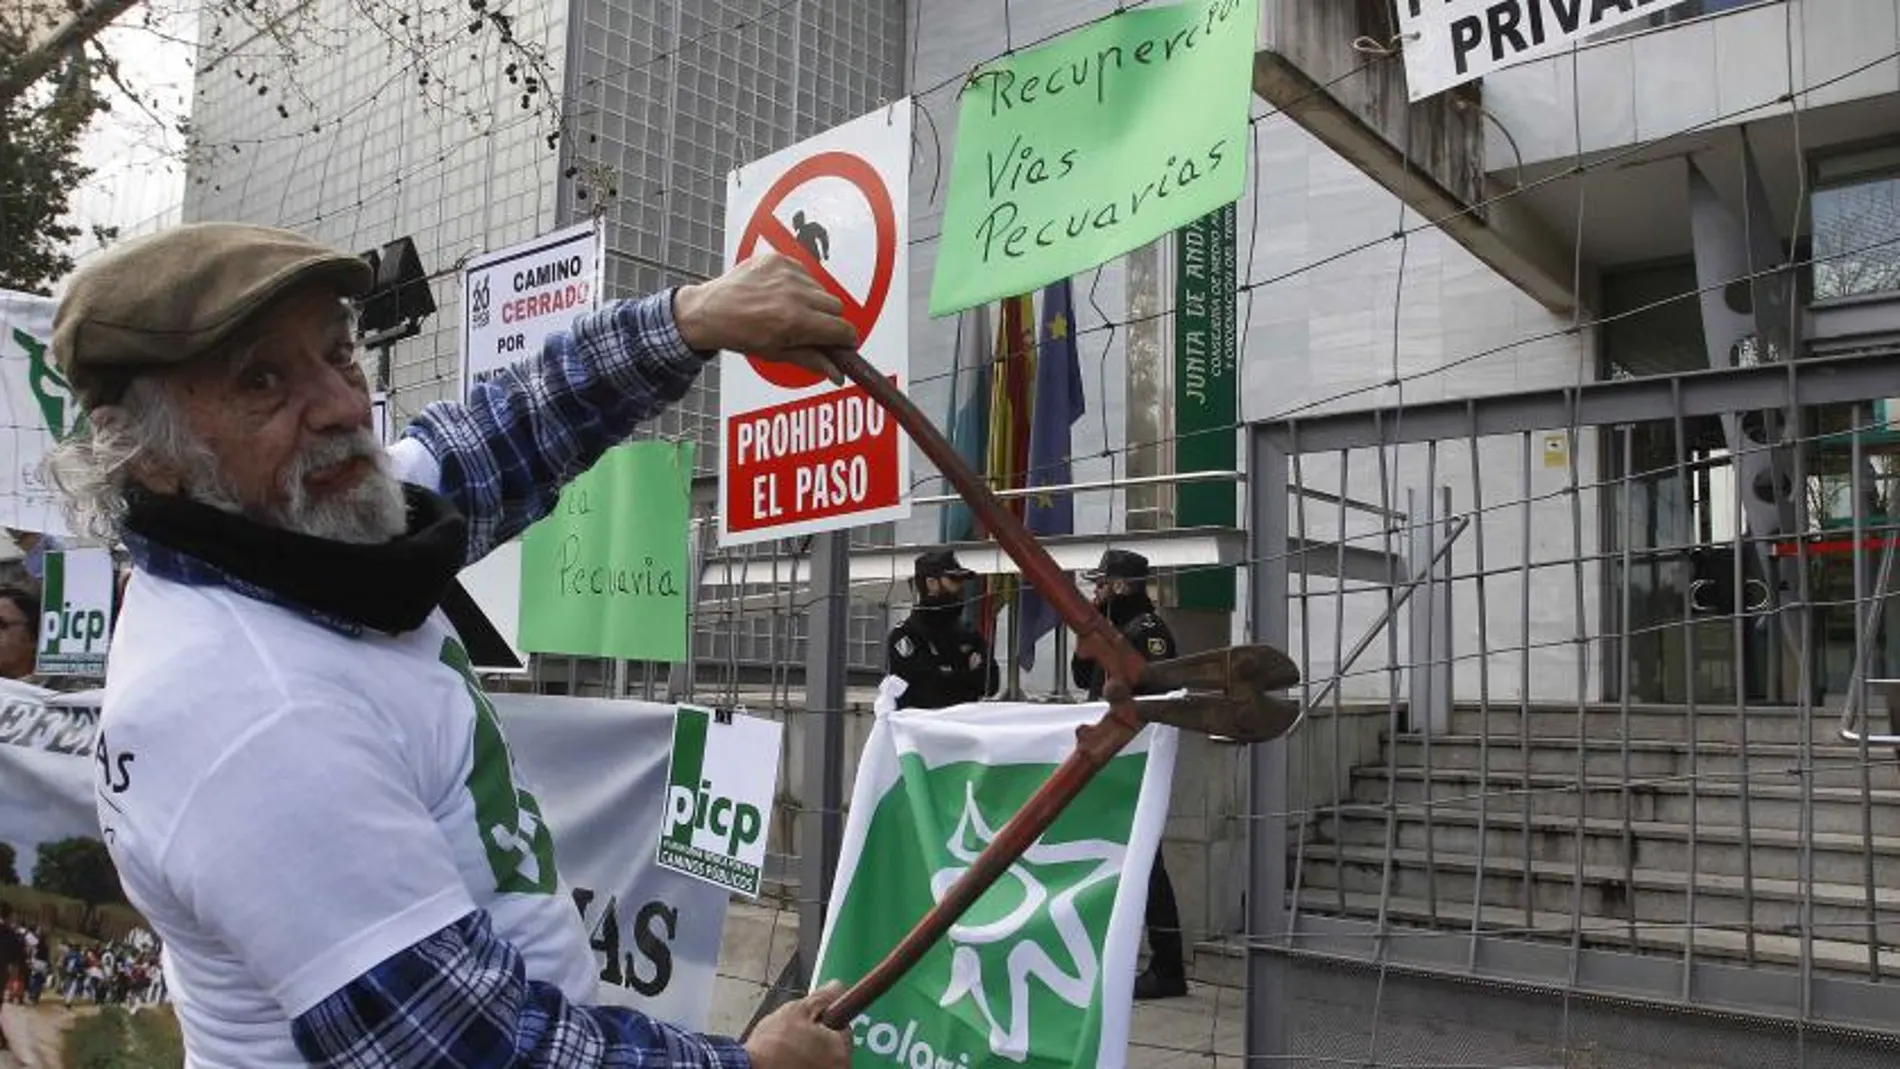 Ecologistas en Acción ha organizado varios actos de protesta en defensa de las vías pecuarias, además de la denuncia interpuesta en los juzgados sevillanos (Foto: Manuel Olmedo)